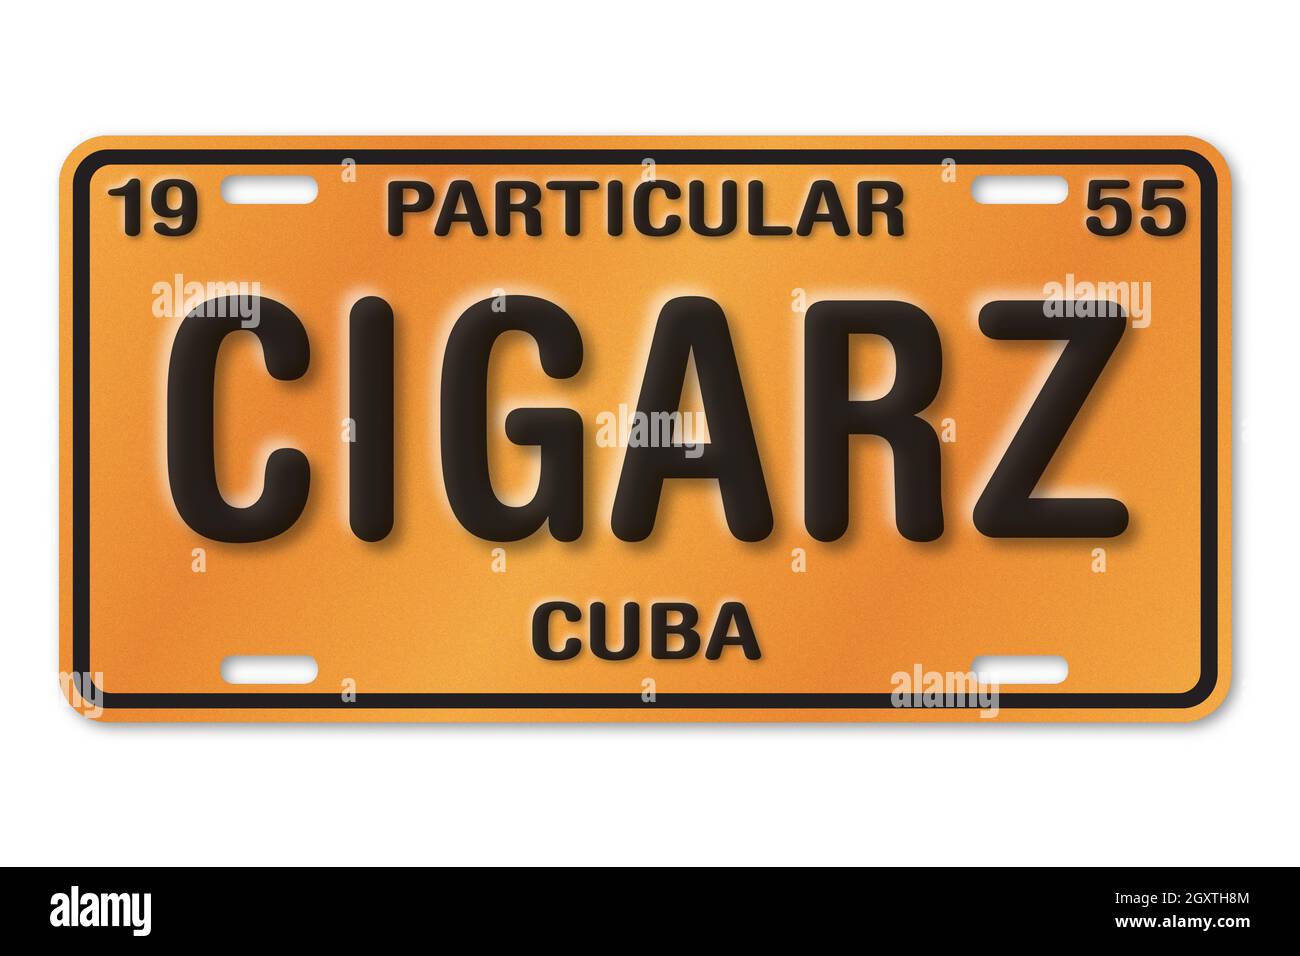 Illustrazione della targa cubana arancione e nera, 1955, 'particolare' significa di proprietà privata. Il testo personalizzato dice CIGARZ, un'ortografia di sigari. Foto Stock